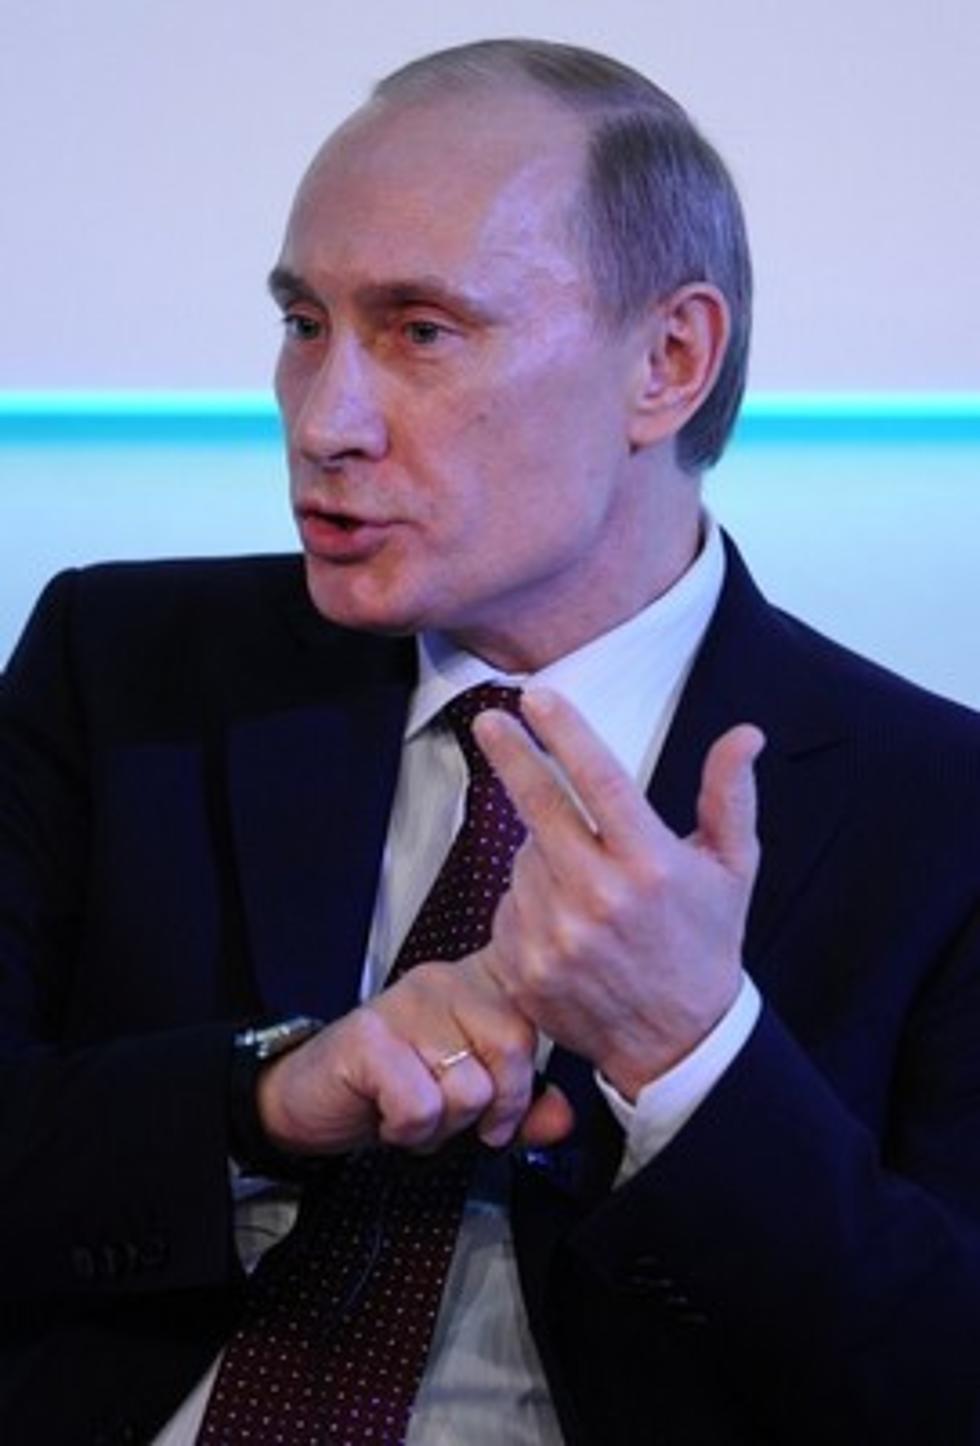 Putin is Puttin’ on the Ritz